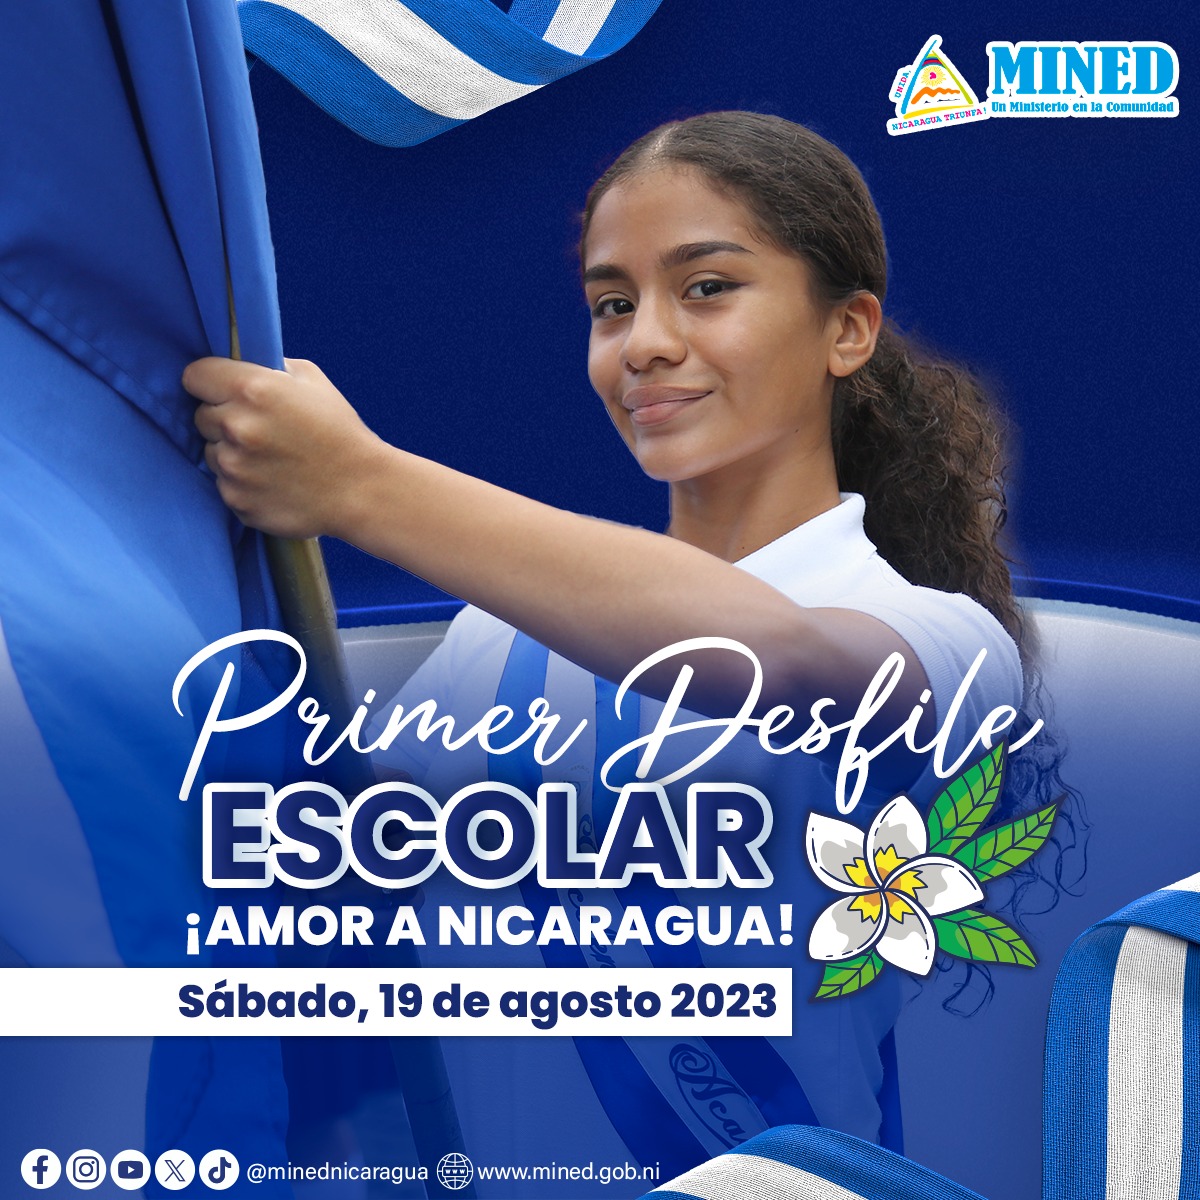 El Mined llevará a cabo este sábado, 19 de agosto, el Primer Desfile Escolar.
¡Amor a Nicaragua!
#Nicaragua
#18Agosto